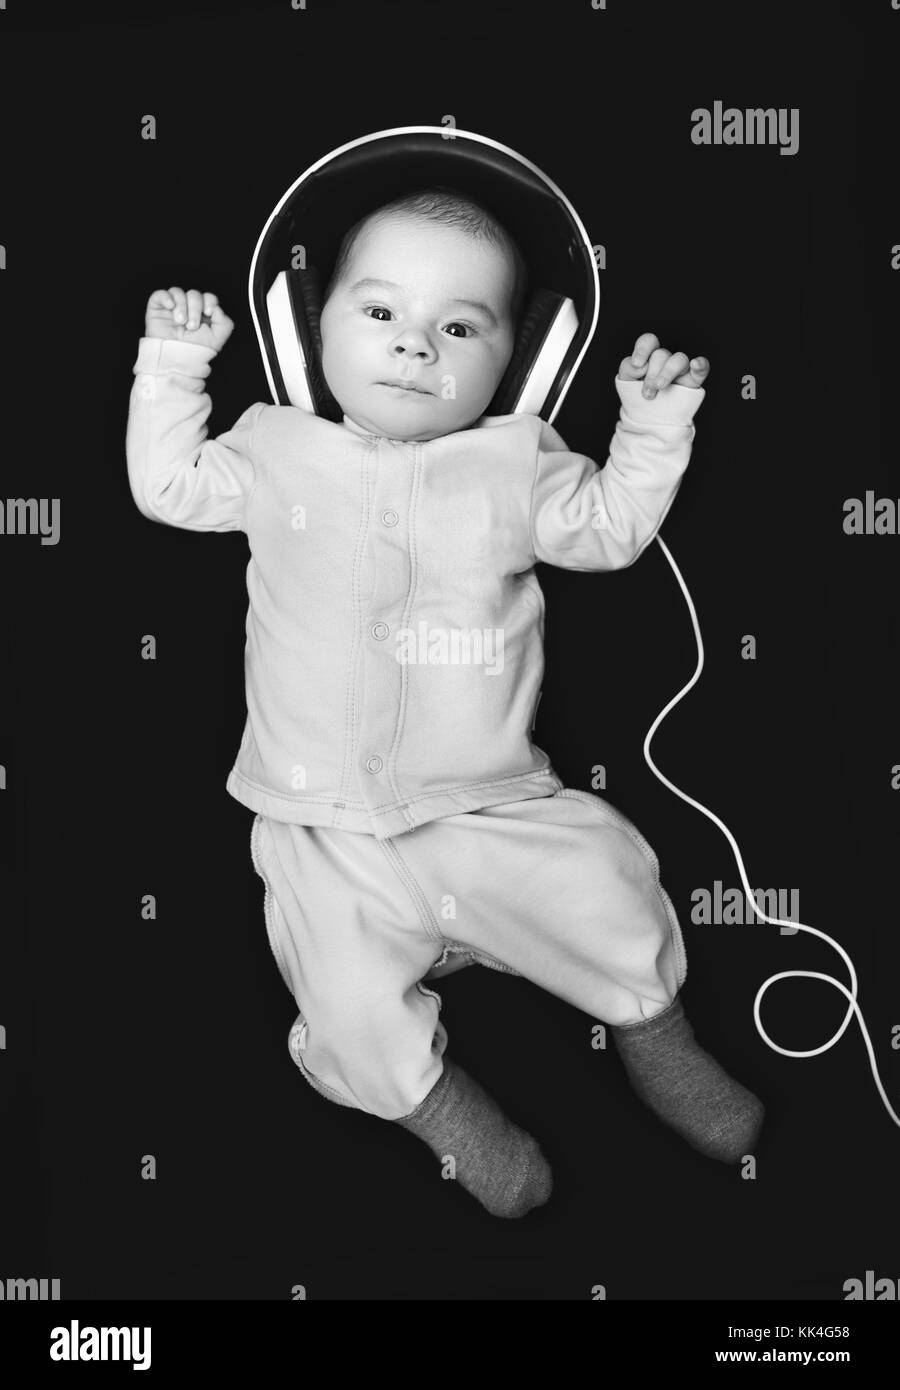 newborn with headphones Stock Photo